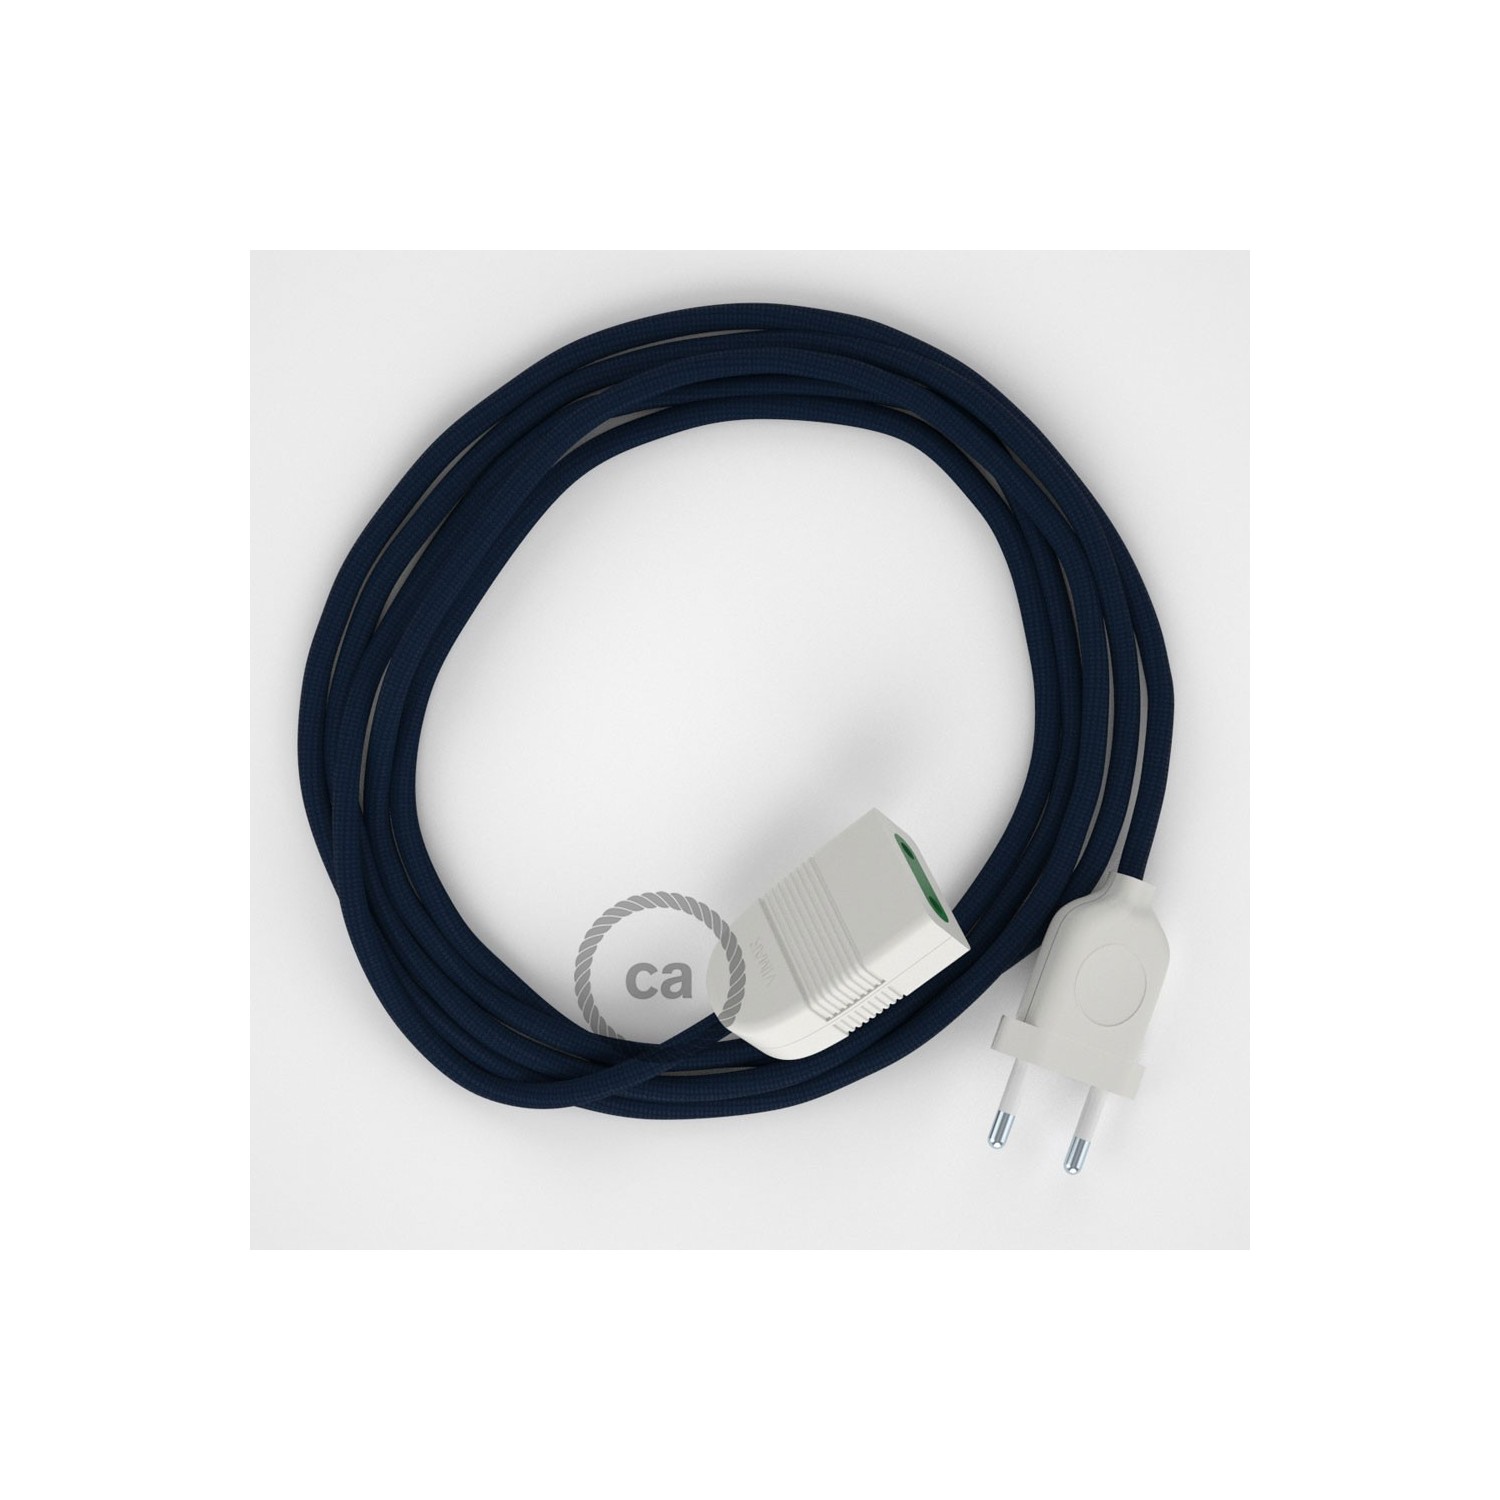 Podaljševalni kabel za napajanje (2P 10A) temno moder rejon RM20 - Made in Italy